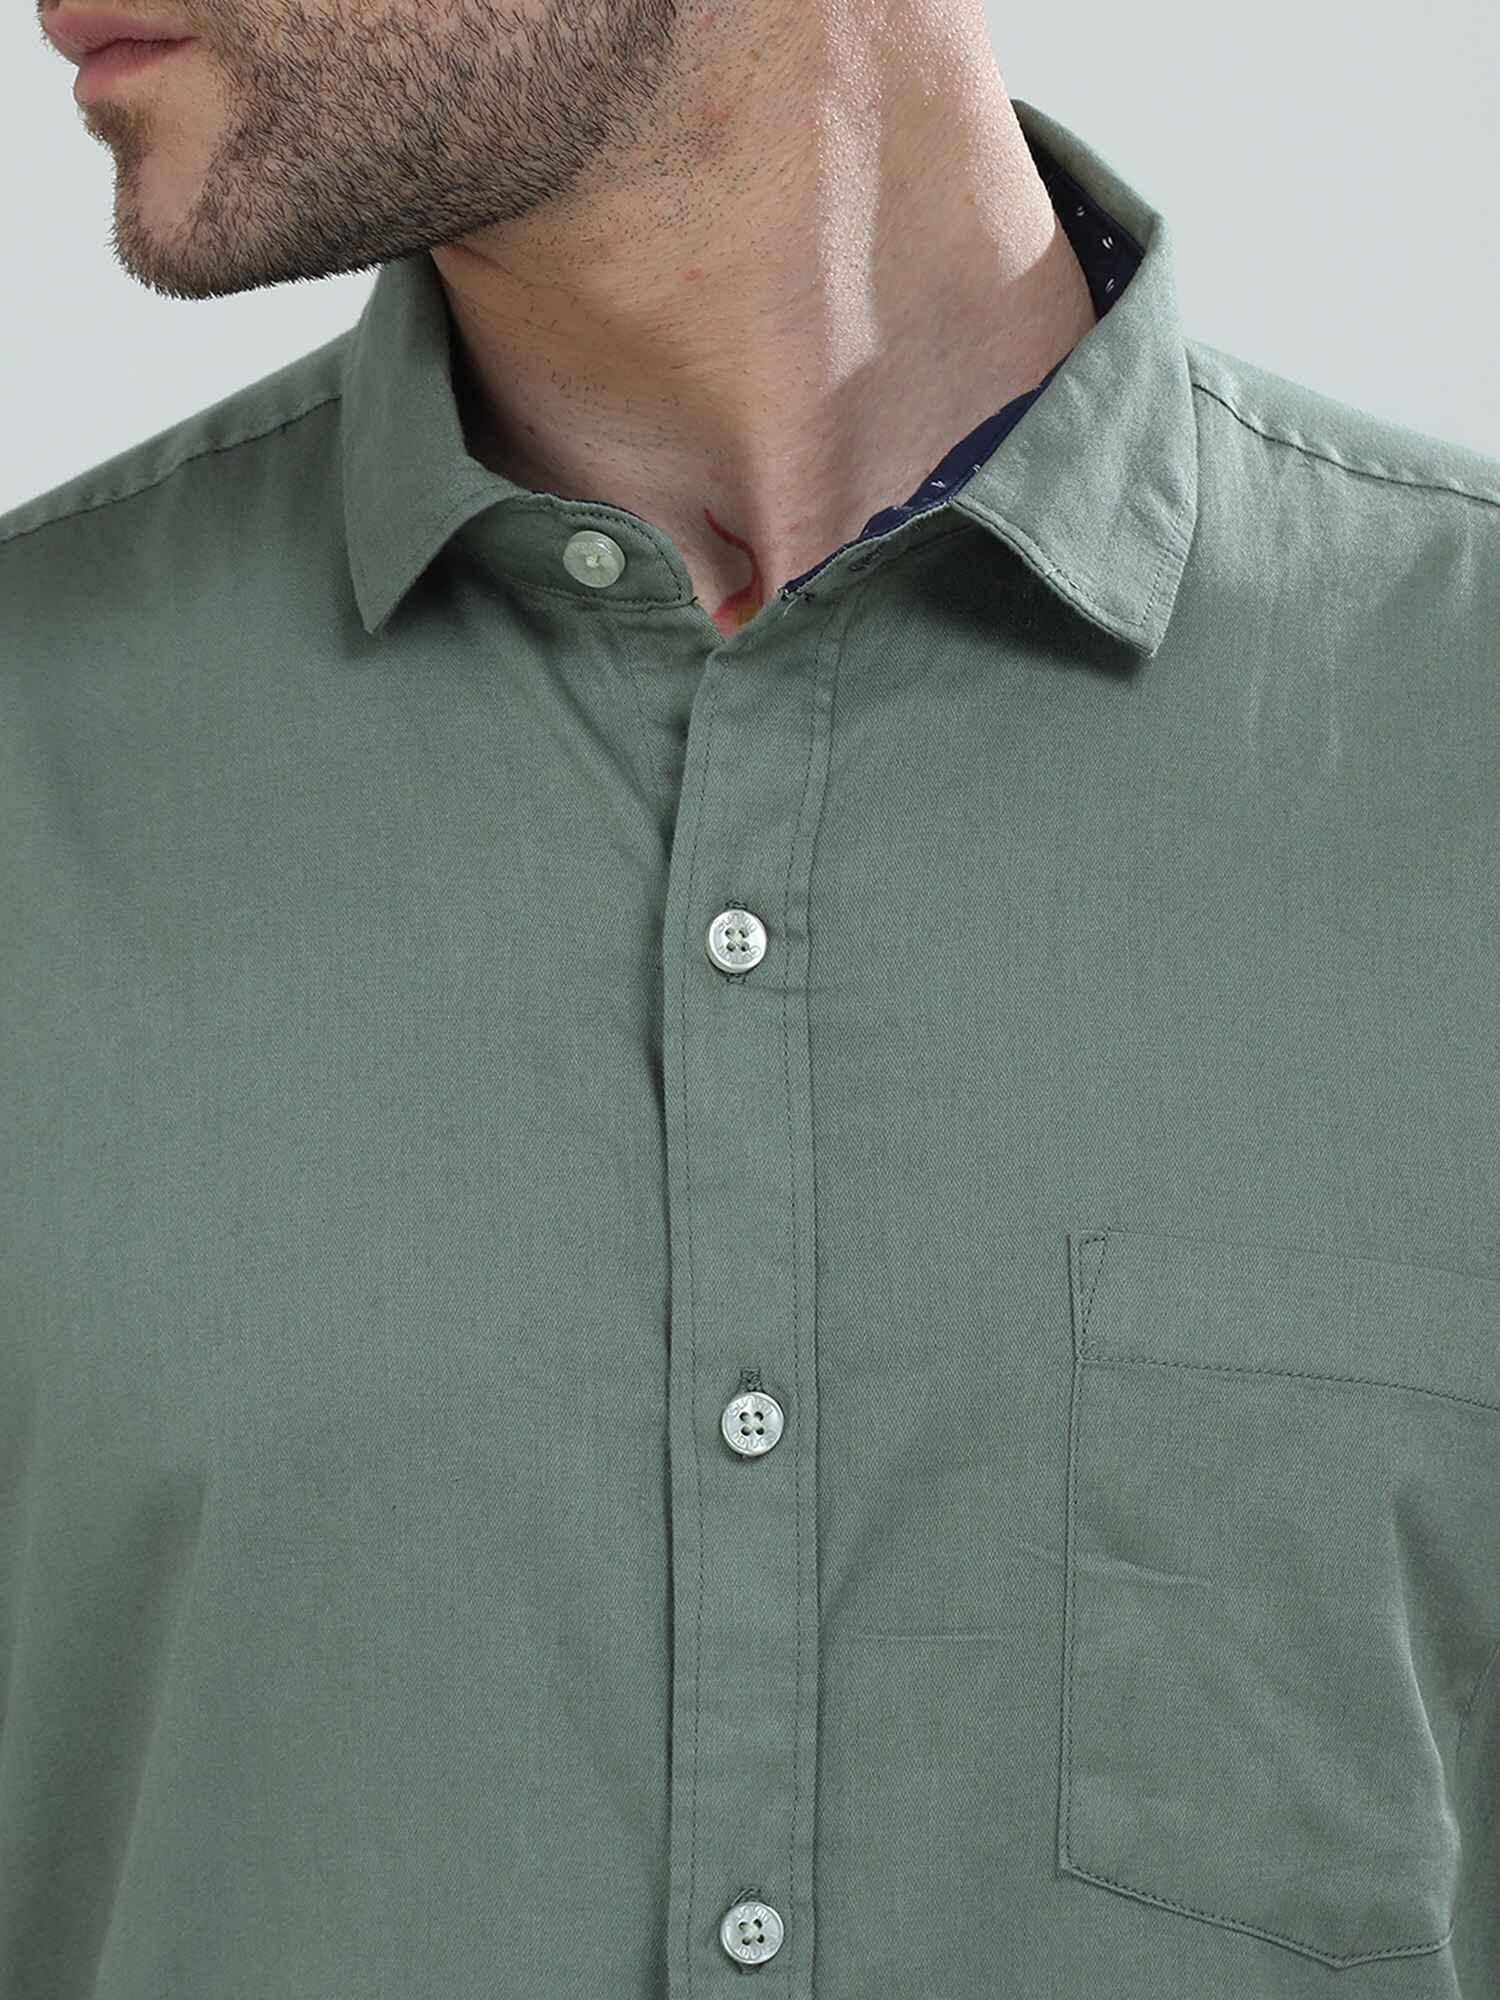 Hunter Green Solid Half Sleeve Shirt - Guniaa Fashions